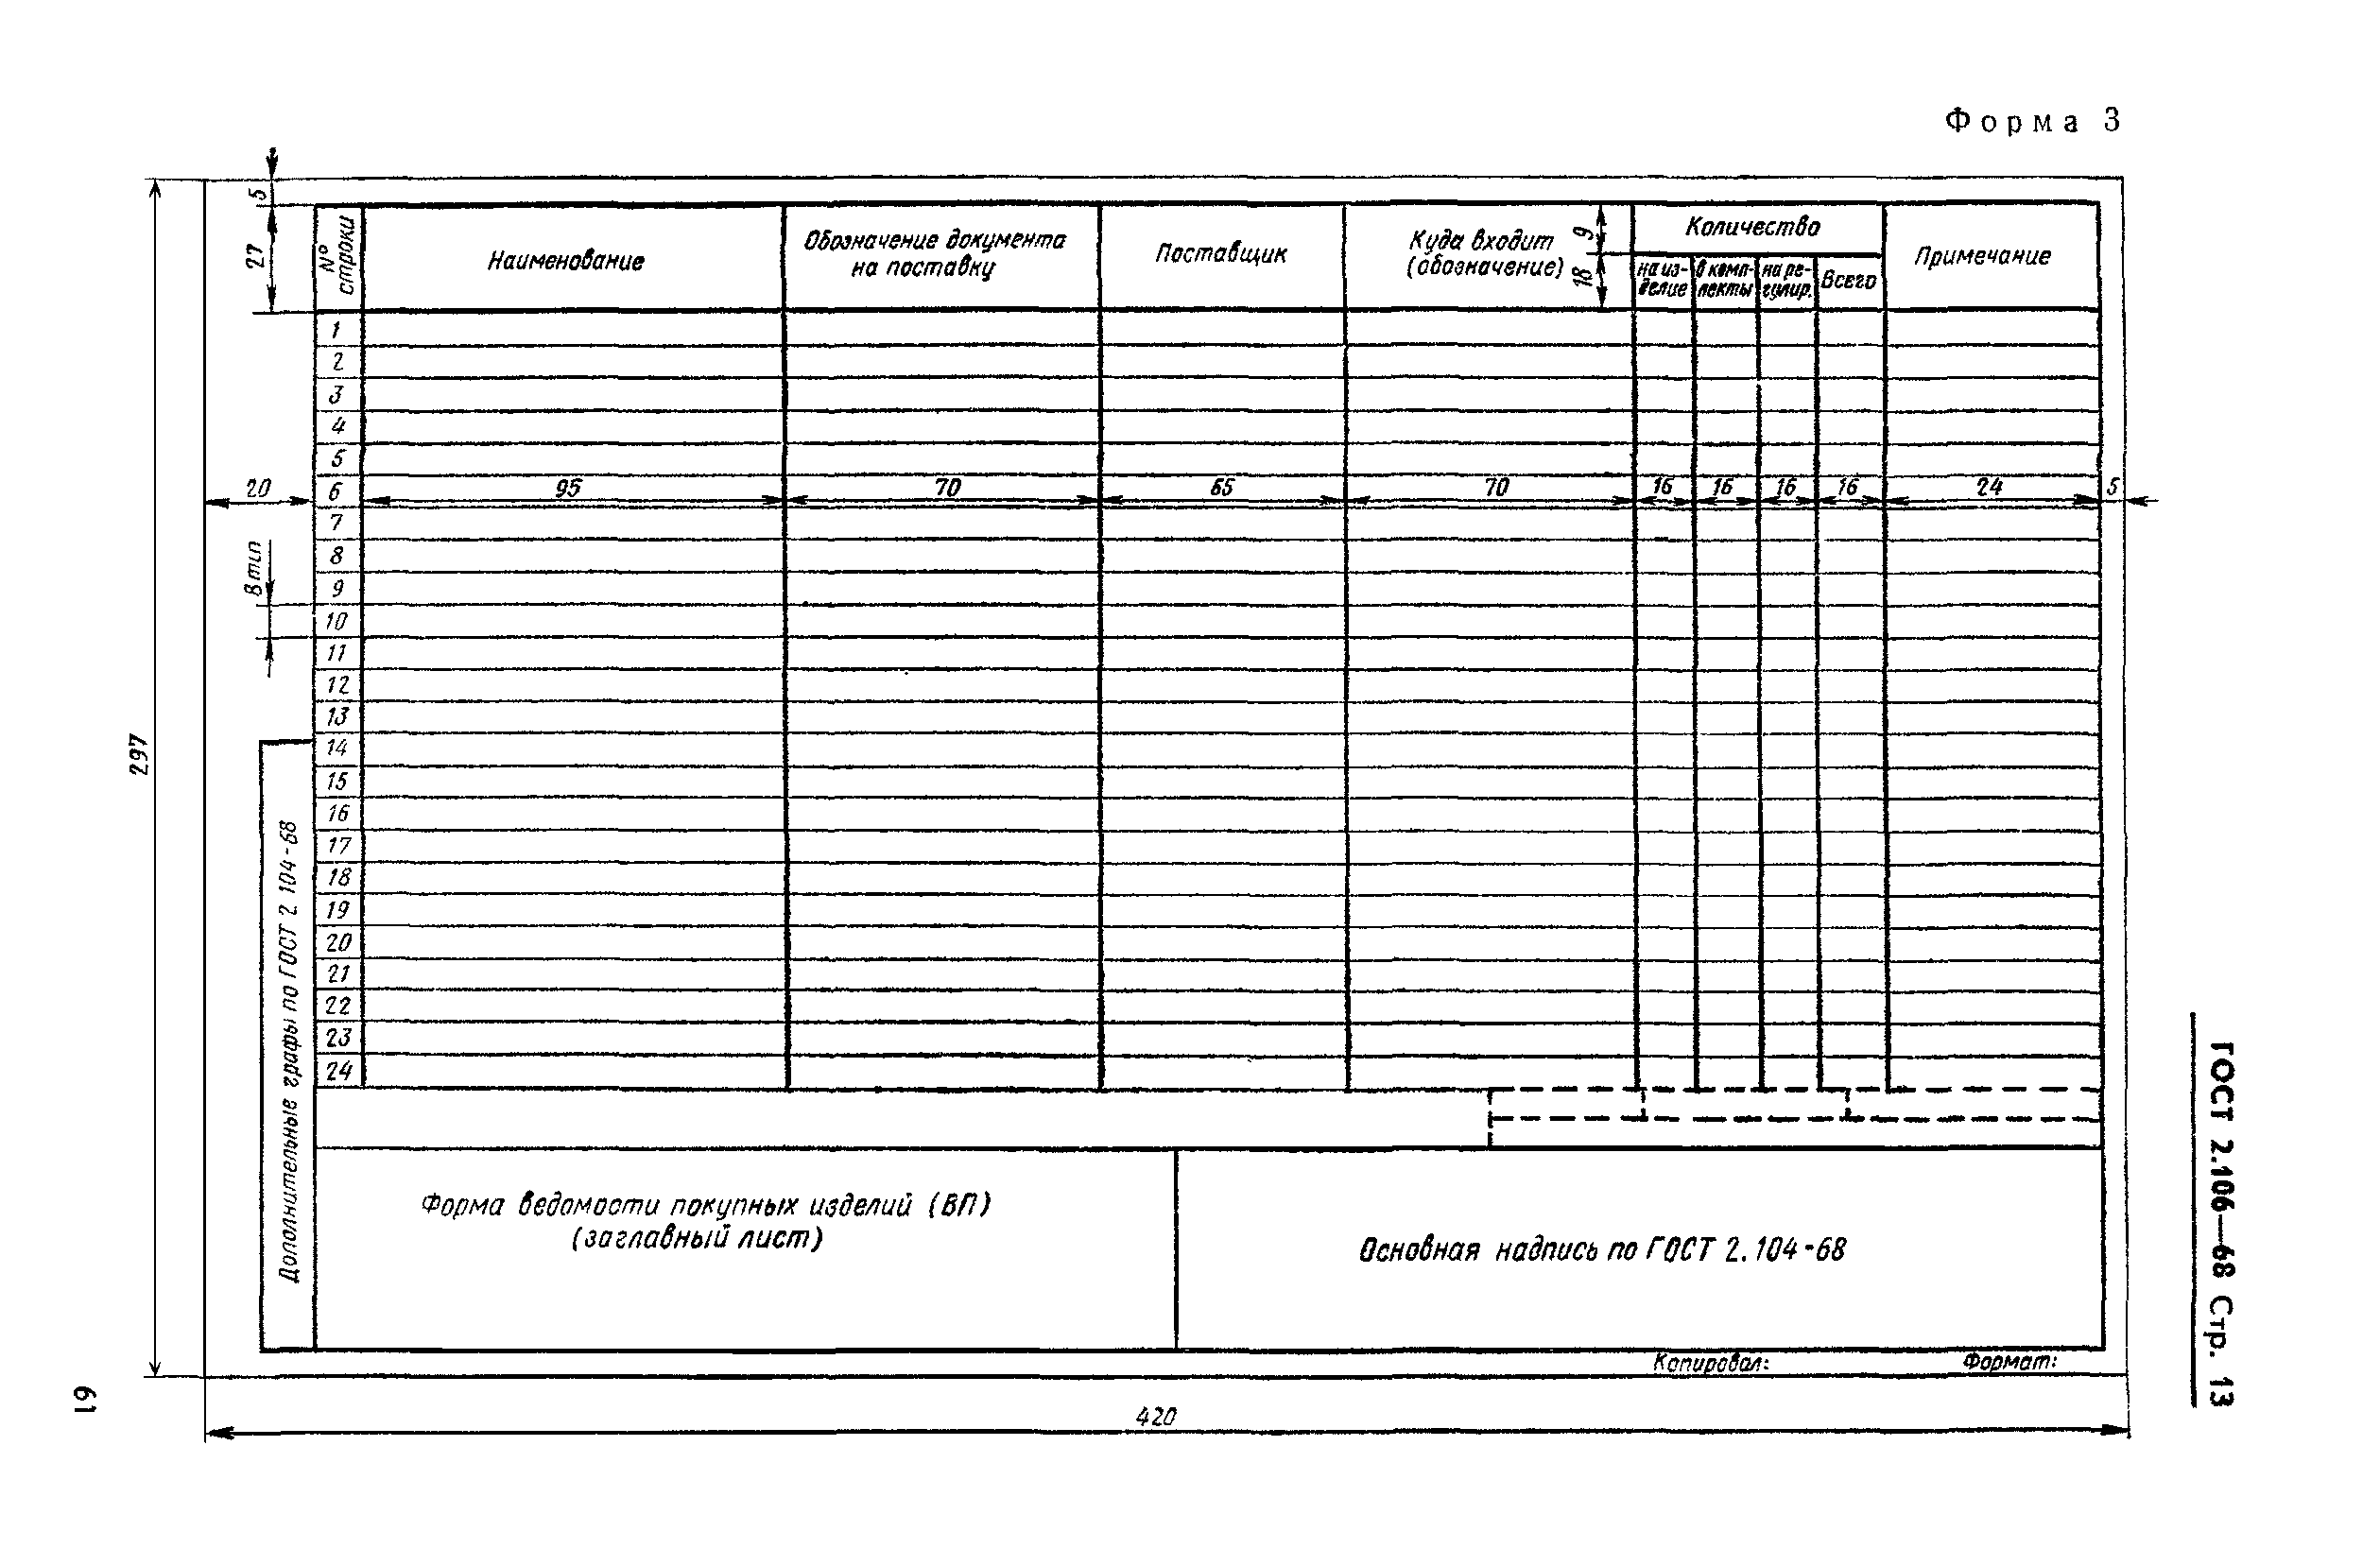 Гост 2.102-68 единая система конструкторской документации (ескд). виды и комплектность конструкторских документов (с изменениями n 1-8)